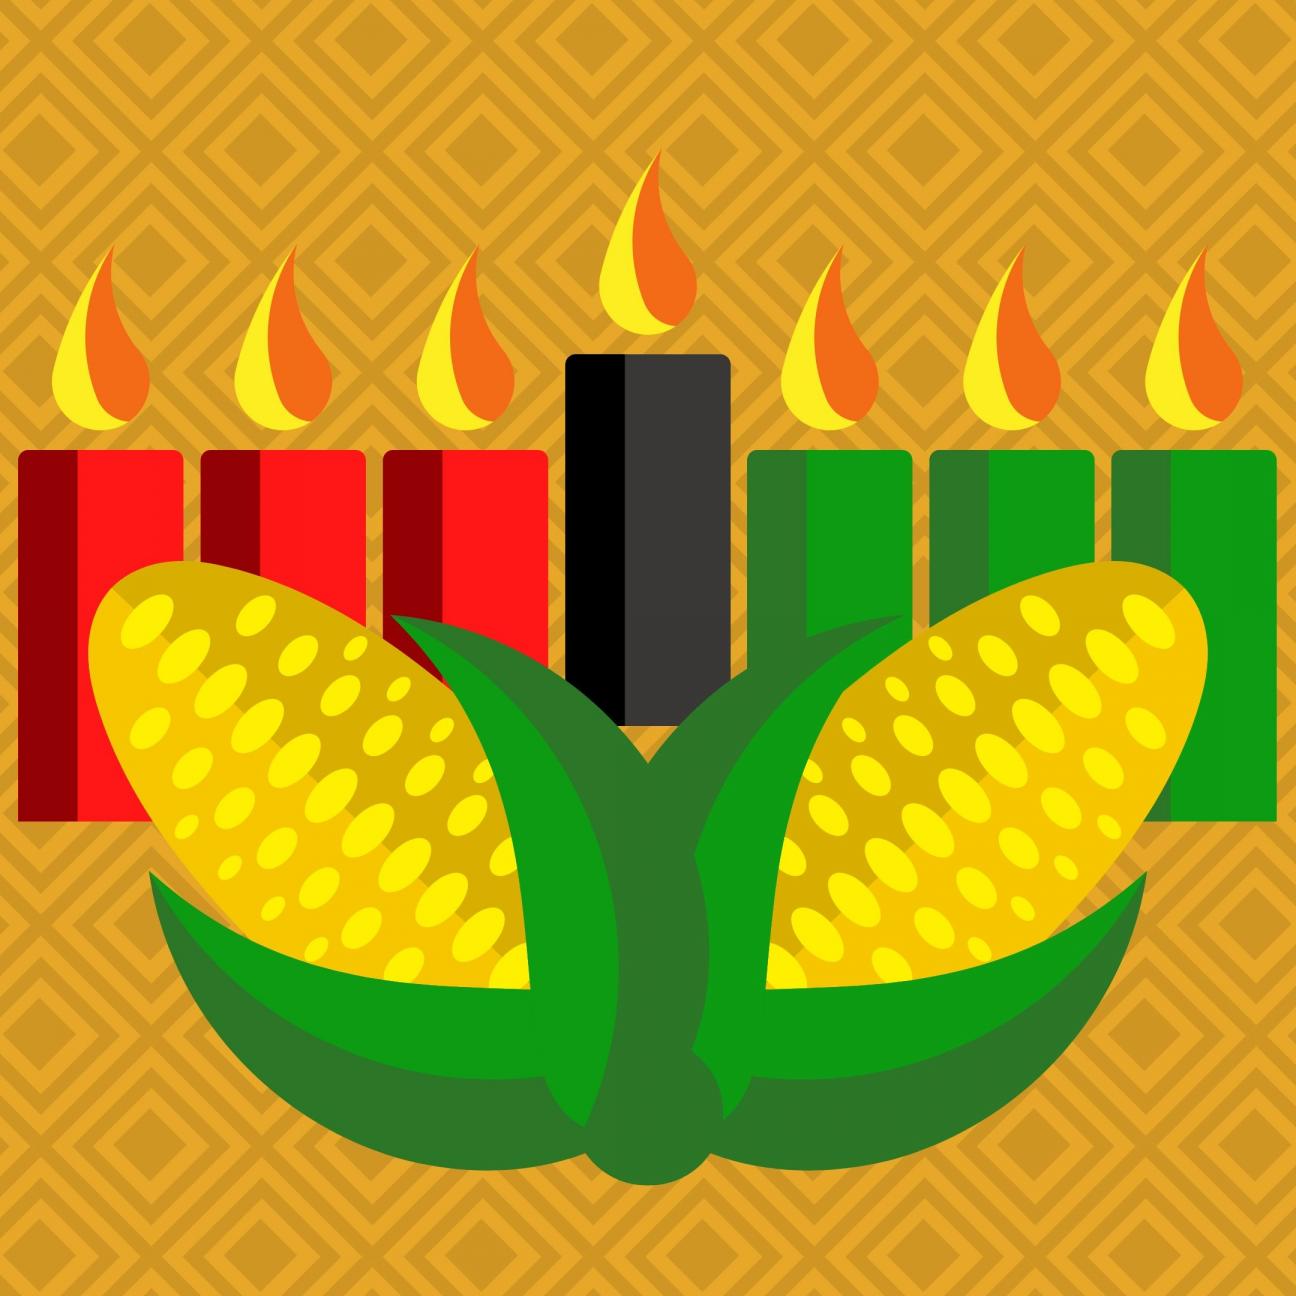 kwanzaa candles, corn